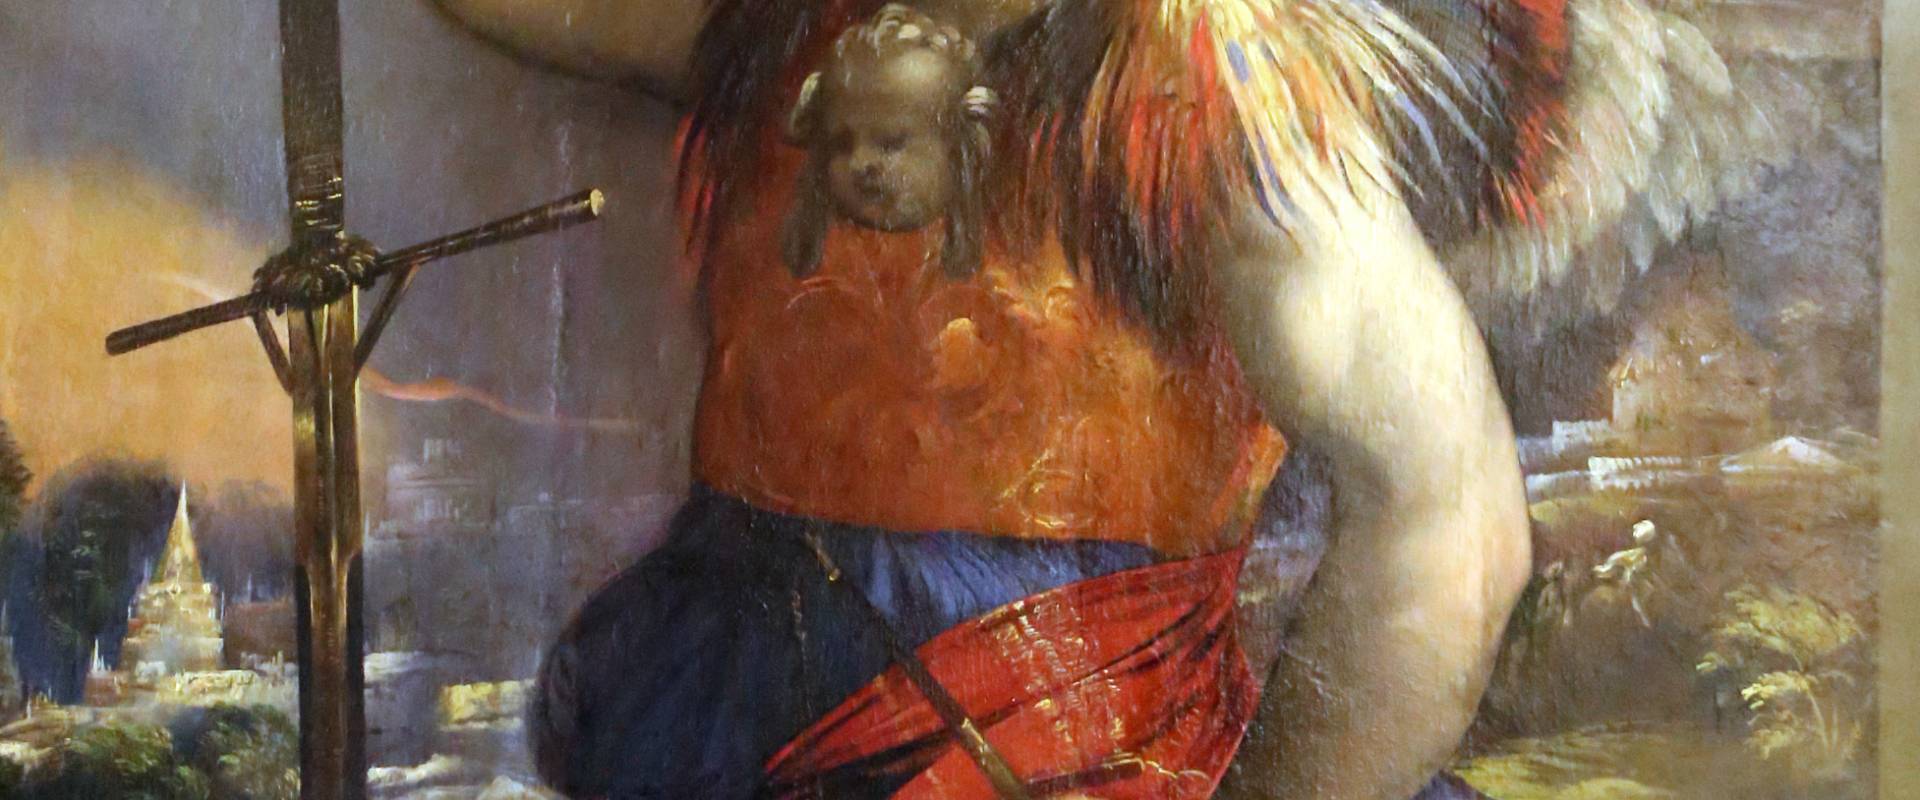 Dosso dossi, madonna col bambino tra i ss. giorgio e michele, 1518-19, 04 foto di Sailko